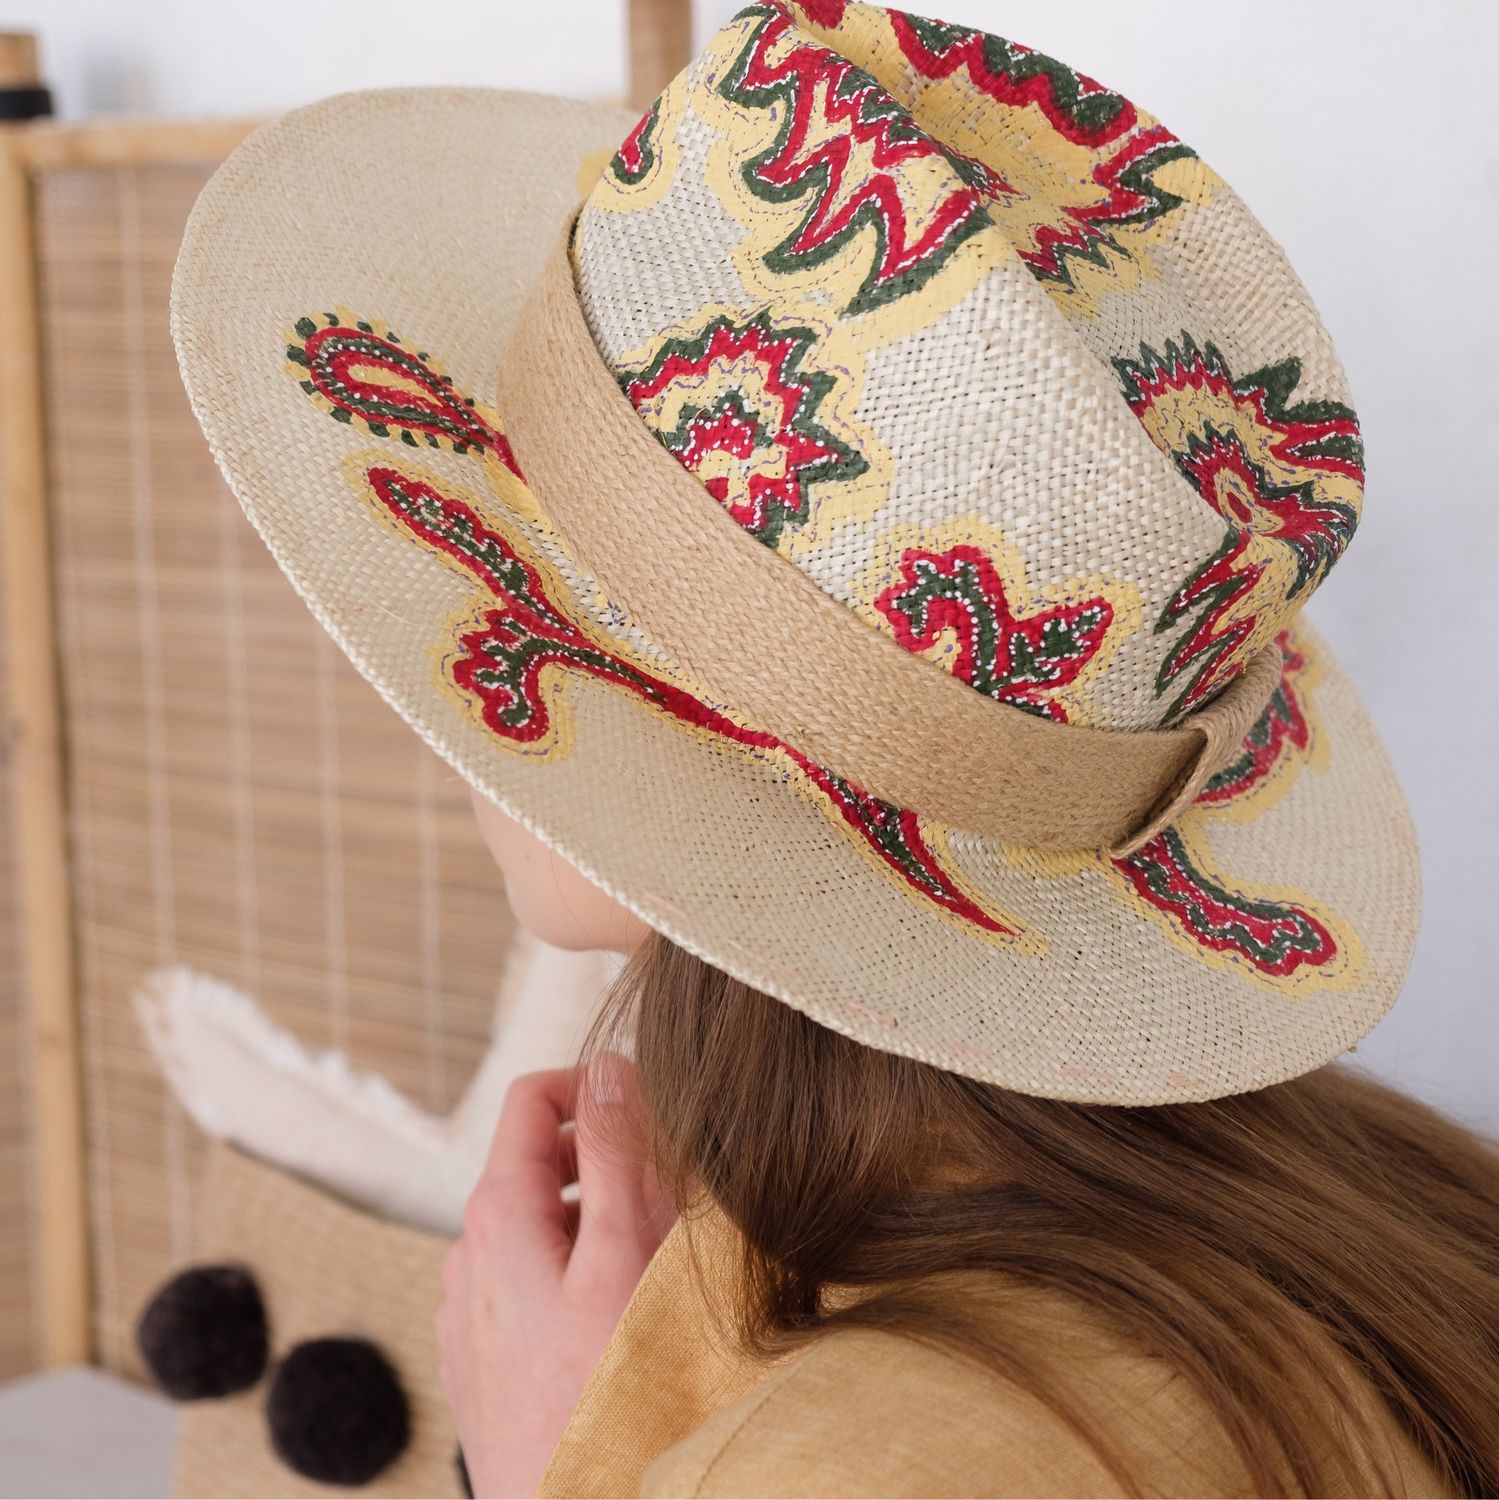 В большой соломенной шляпе расписанной чудесными цветами. Дизайнерские шляпки. Шляпа с принтом. Шляпки соломенные летние в итальянском стиле. Принт соломенная шляпа.